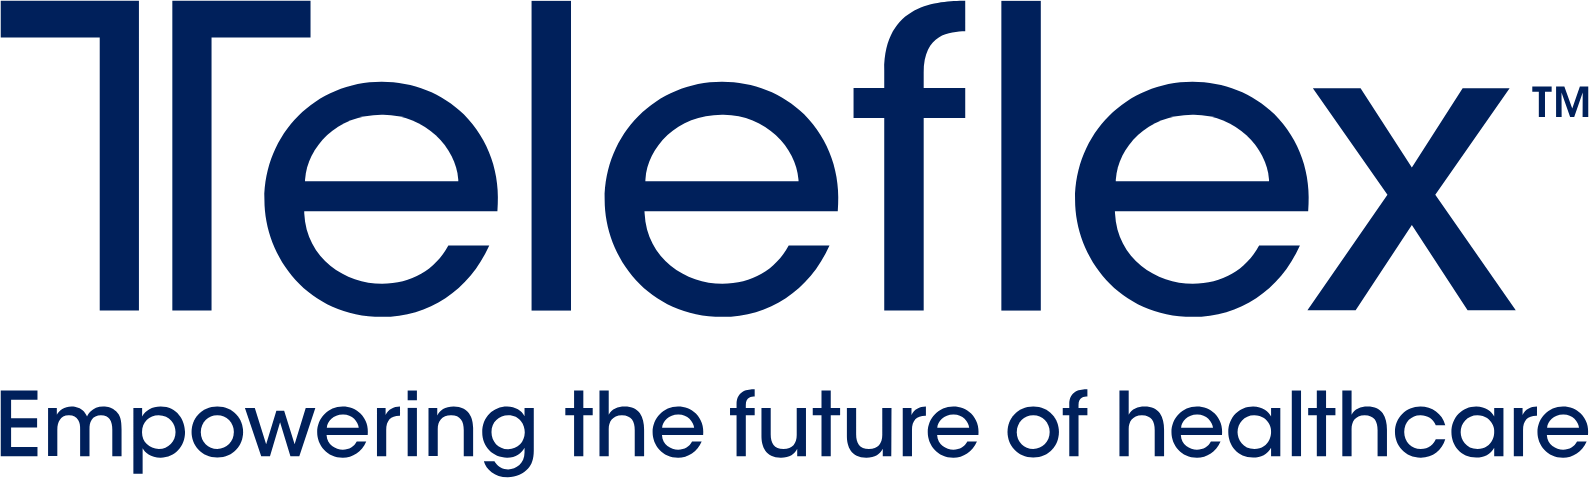 Teleflex logo large (transparent PNG)